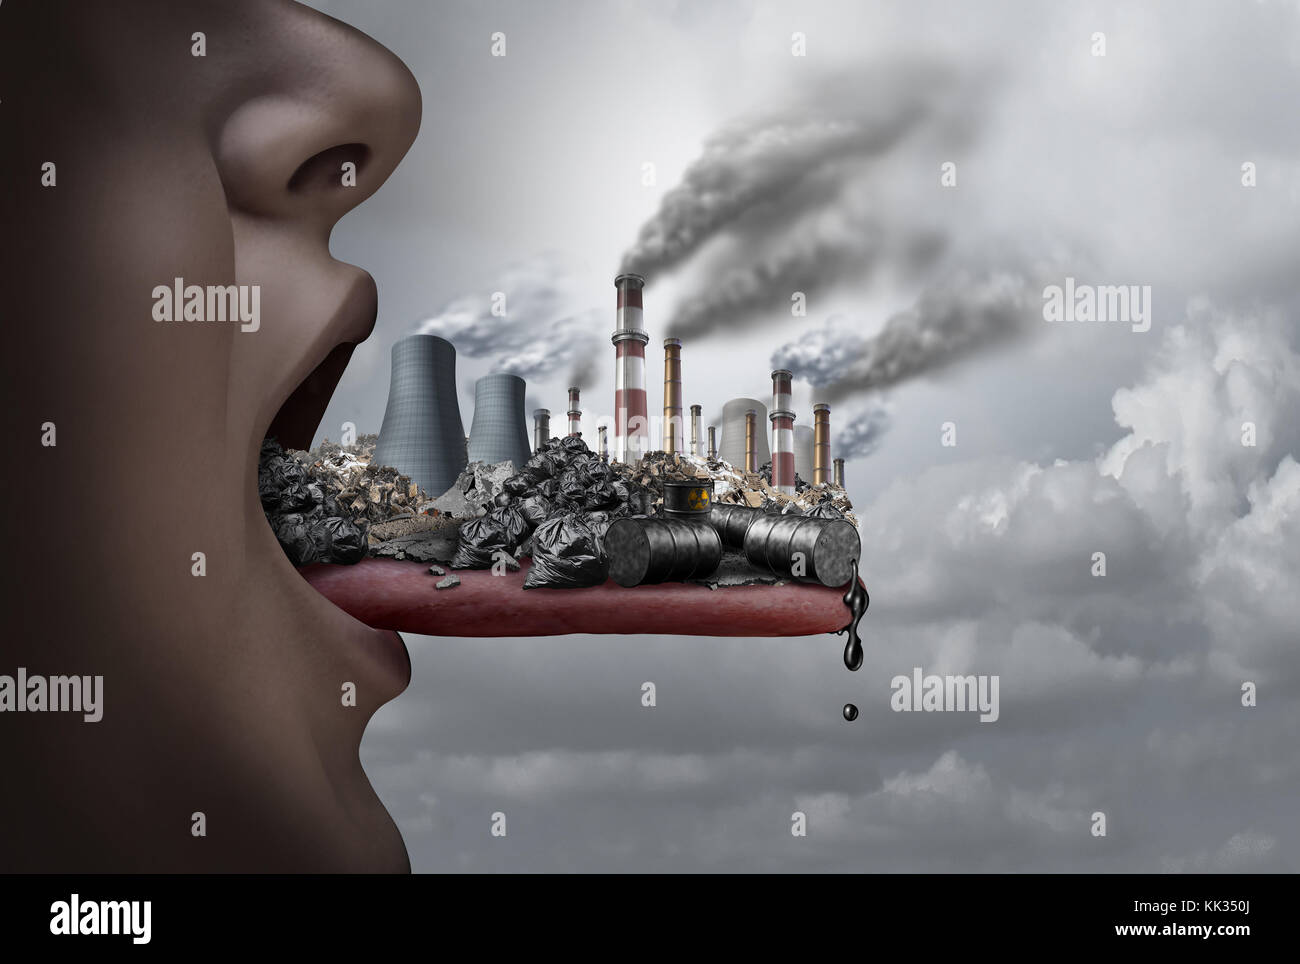 Giftige Schadstoffe, die im menschlichen Körper und essen Schadstoffe als offener Mund einnehmen der industriellen Giftstoffe mit 3D-Illustration Elemente. Stockfoto